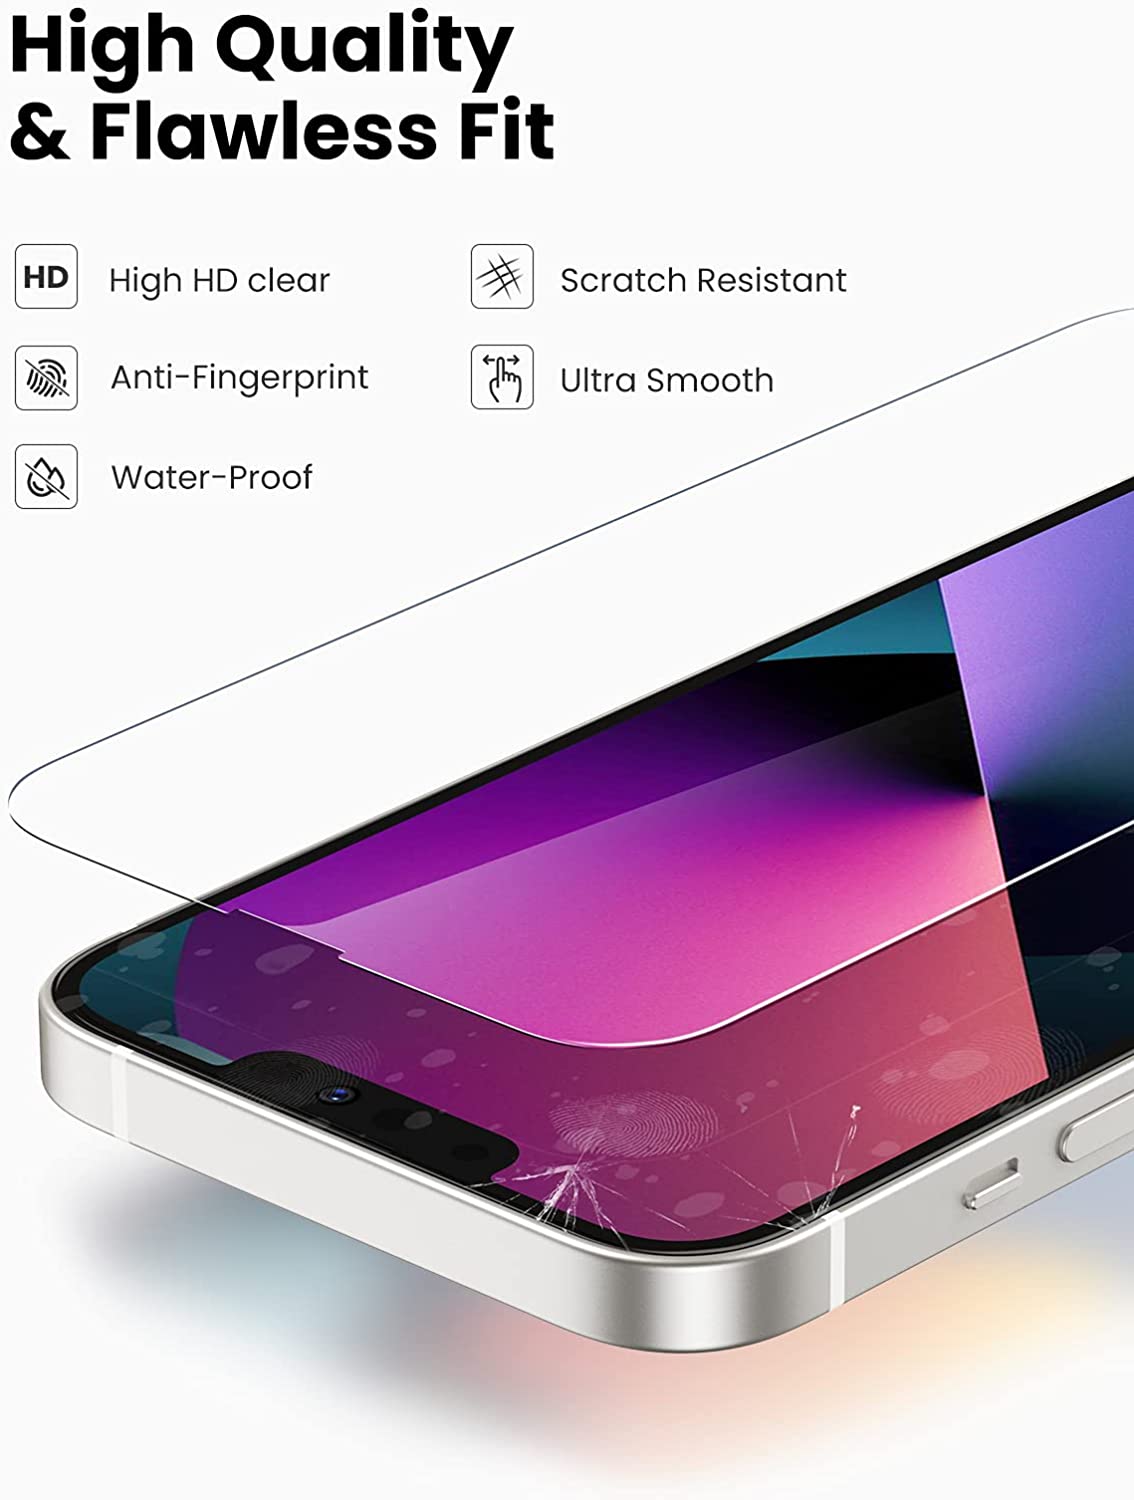 Kính cường lực UGREEN SP207 - Dành cho iPhone Pro Max, kích thước 6.7inch - Độ cứng 9H chống xước, bám vân tay - Đi kèm bộ phụ kiện tự lắp đặt